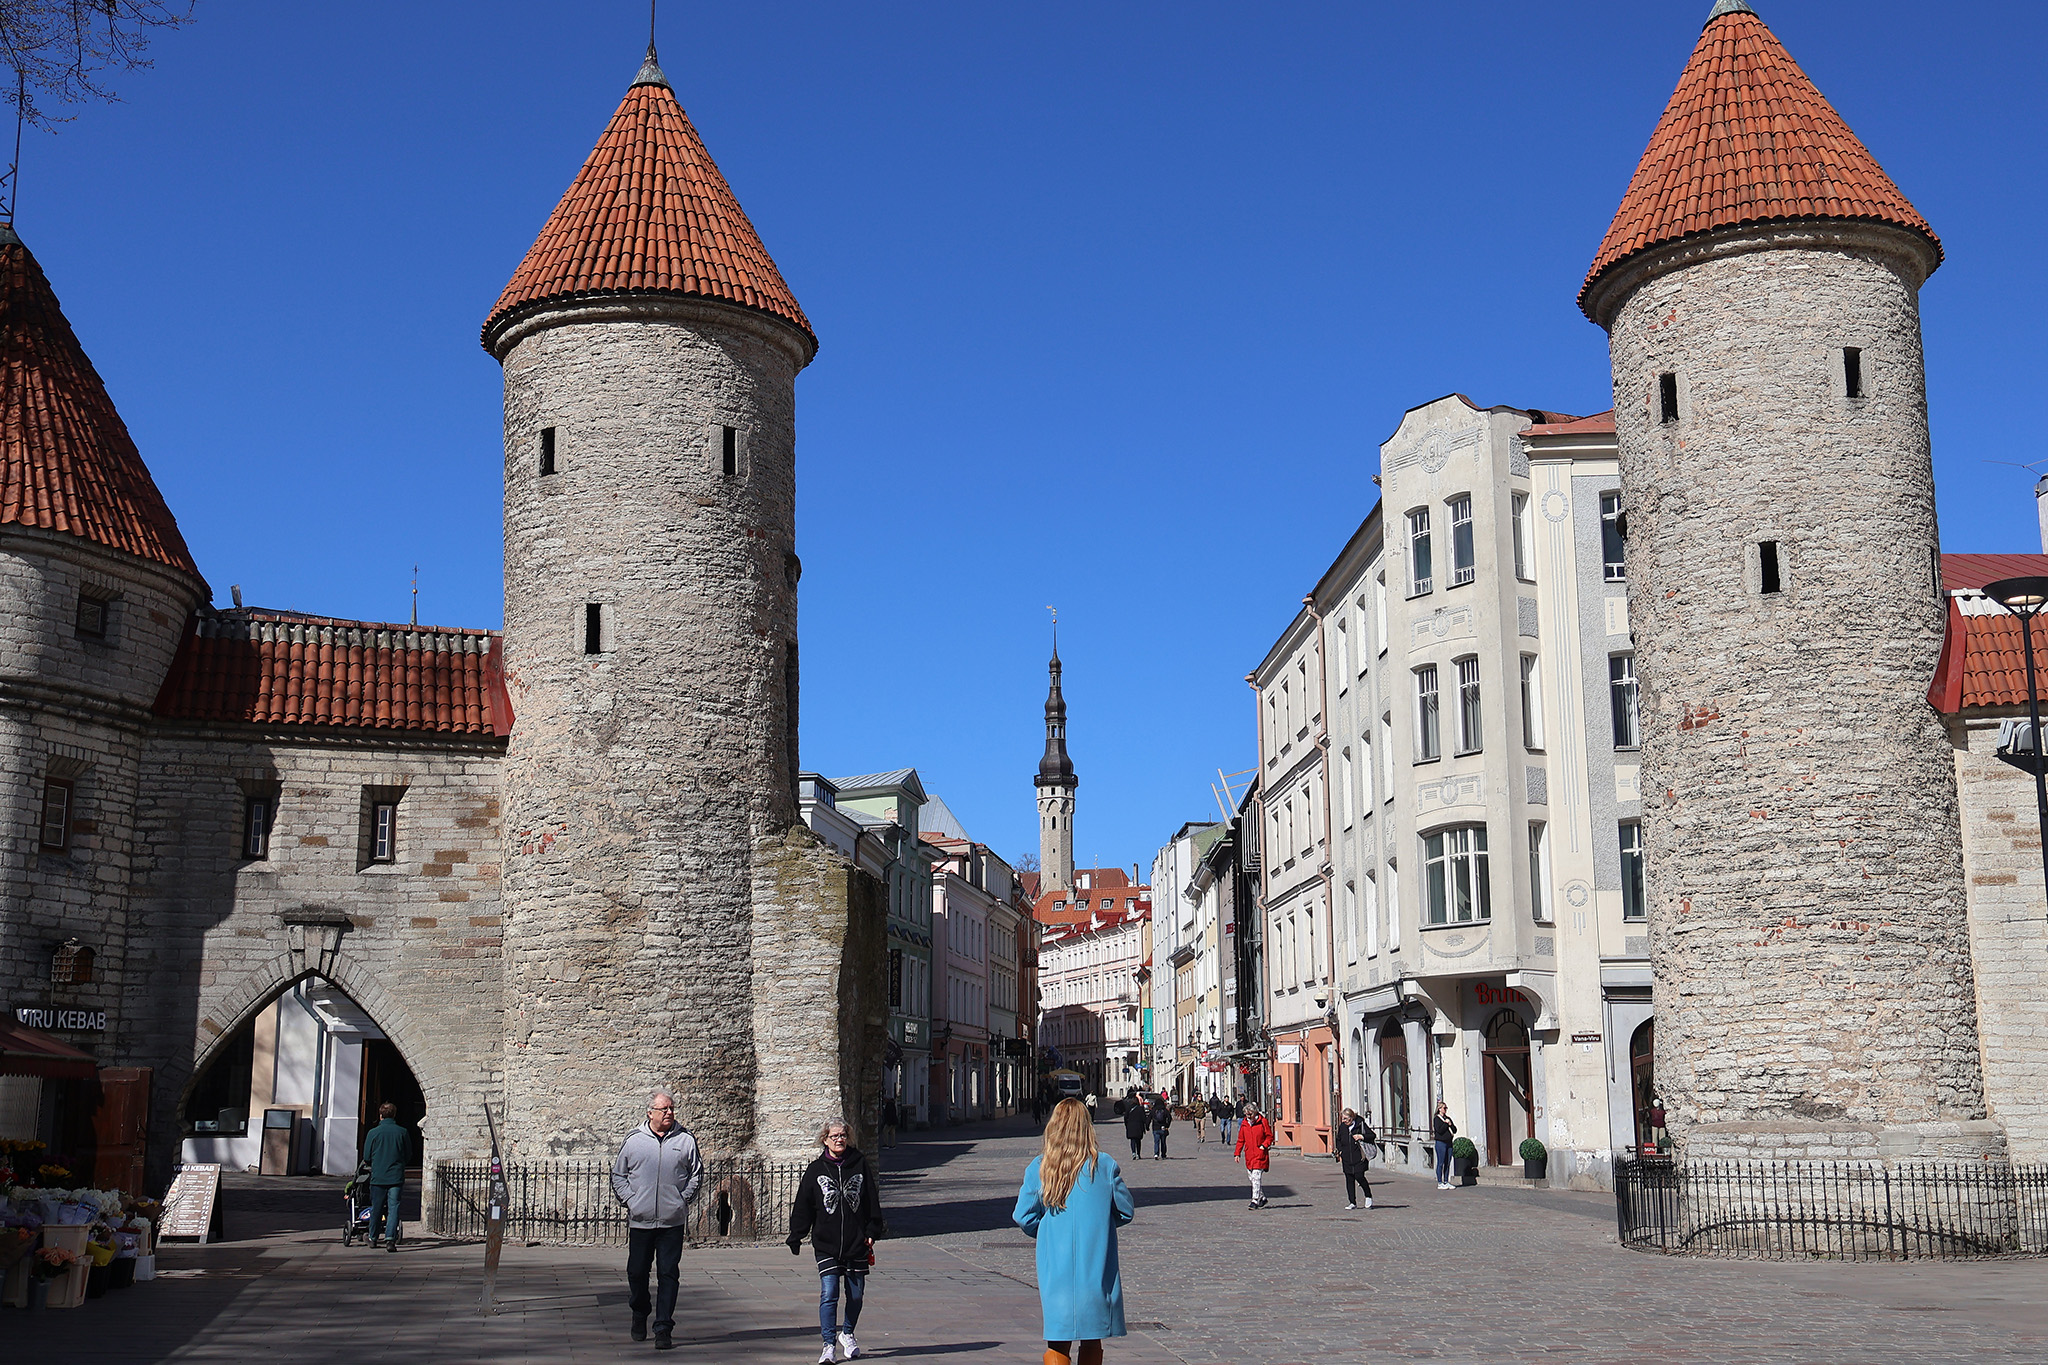 Tallinn Part 1: My Old Town